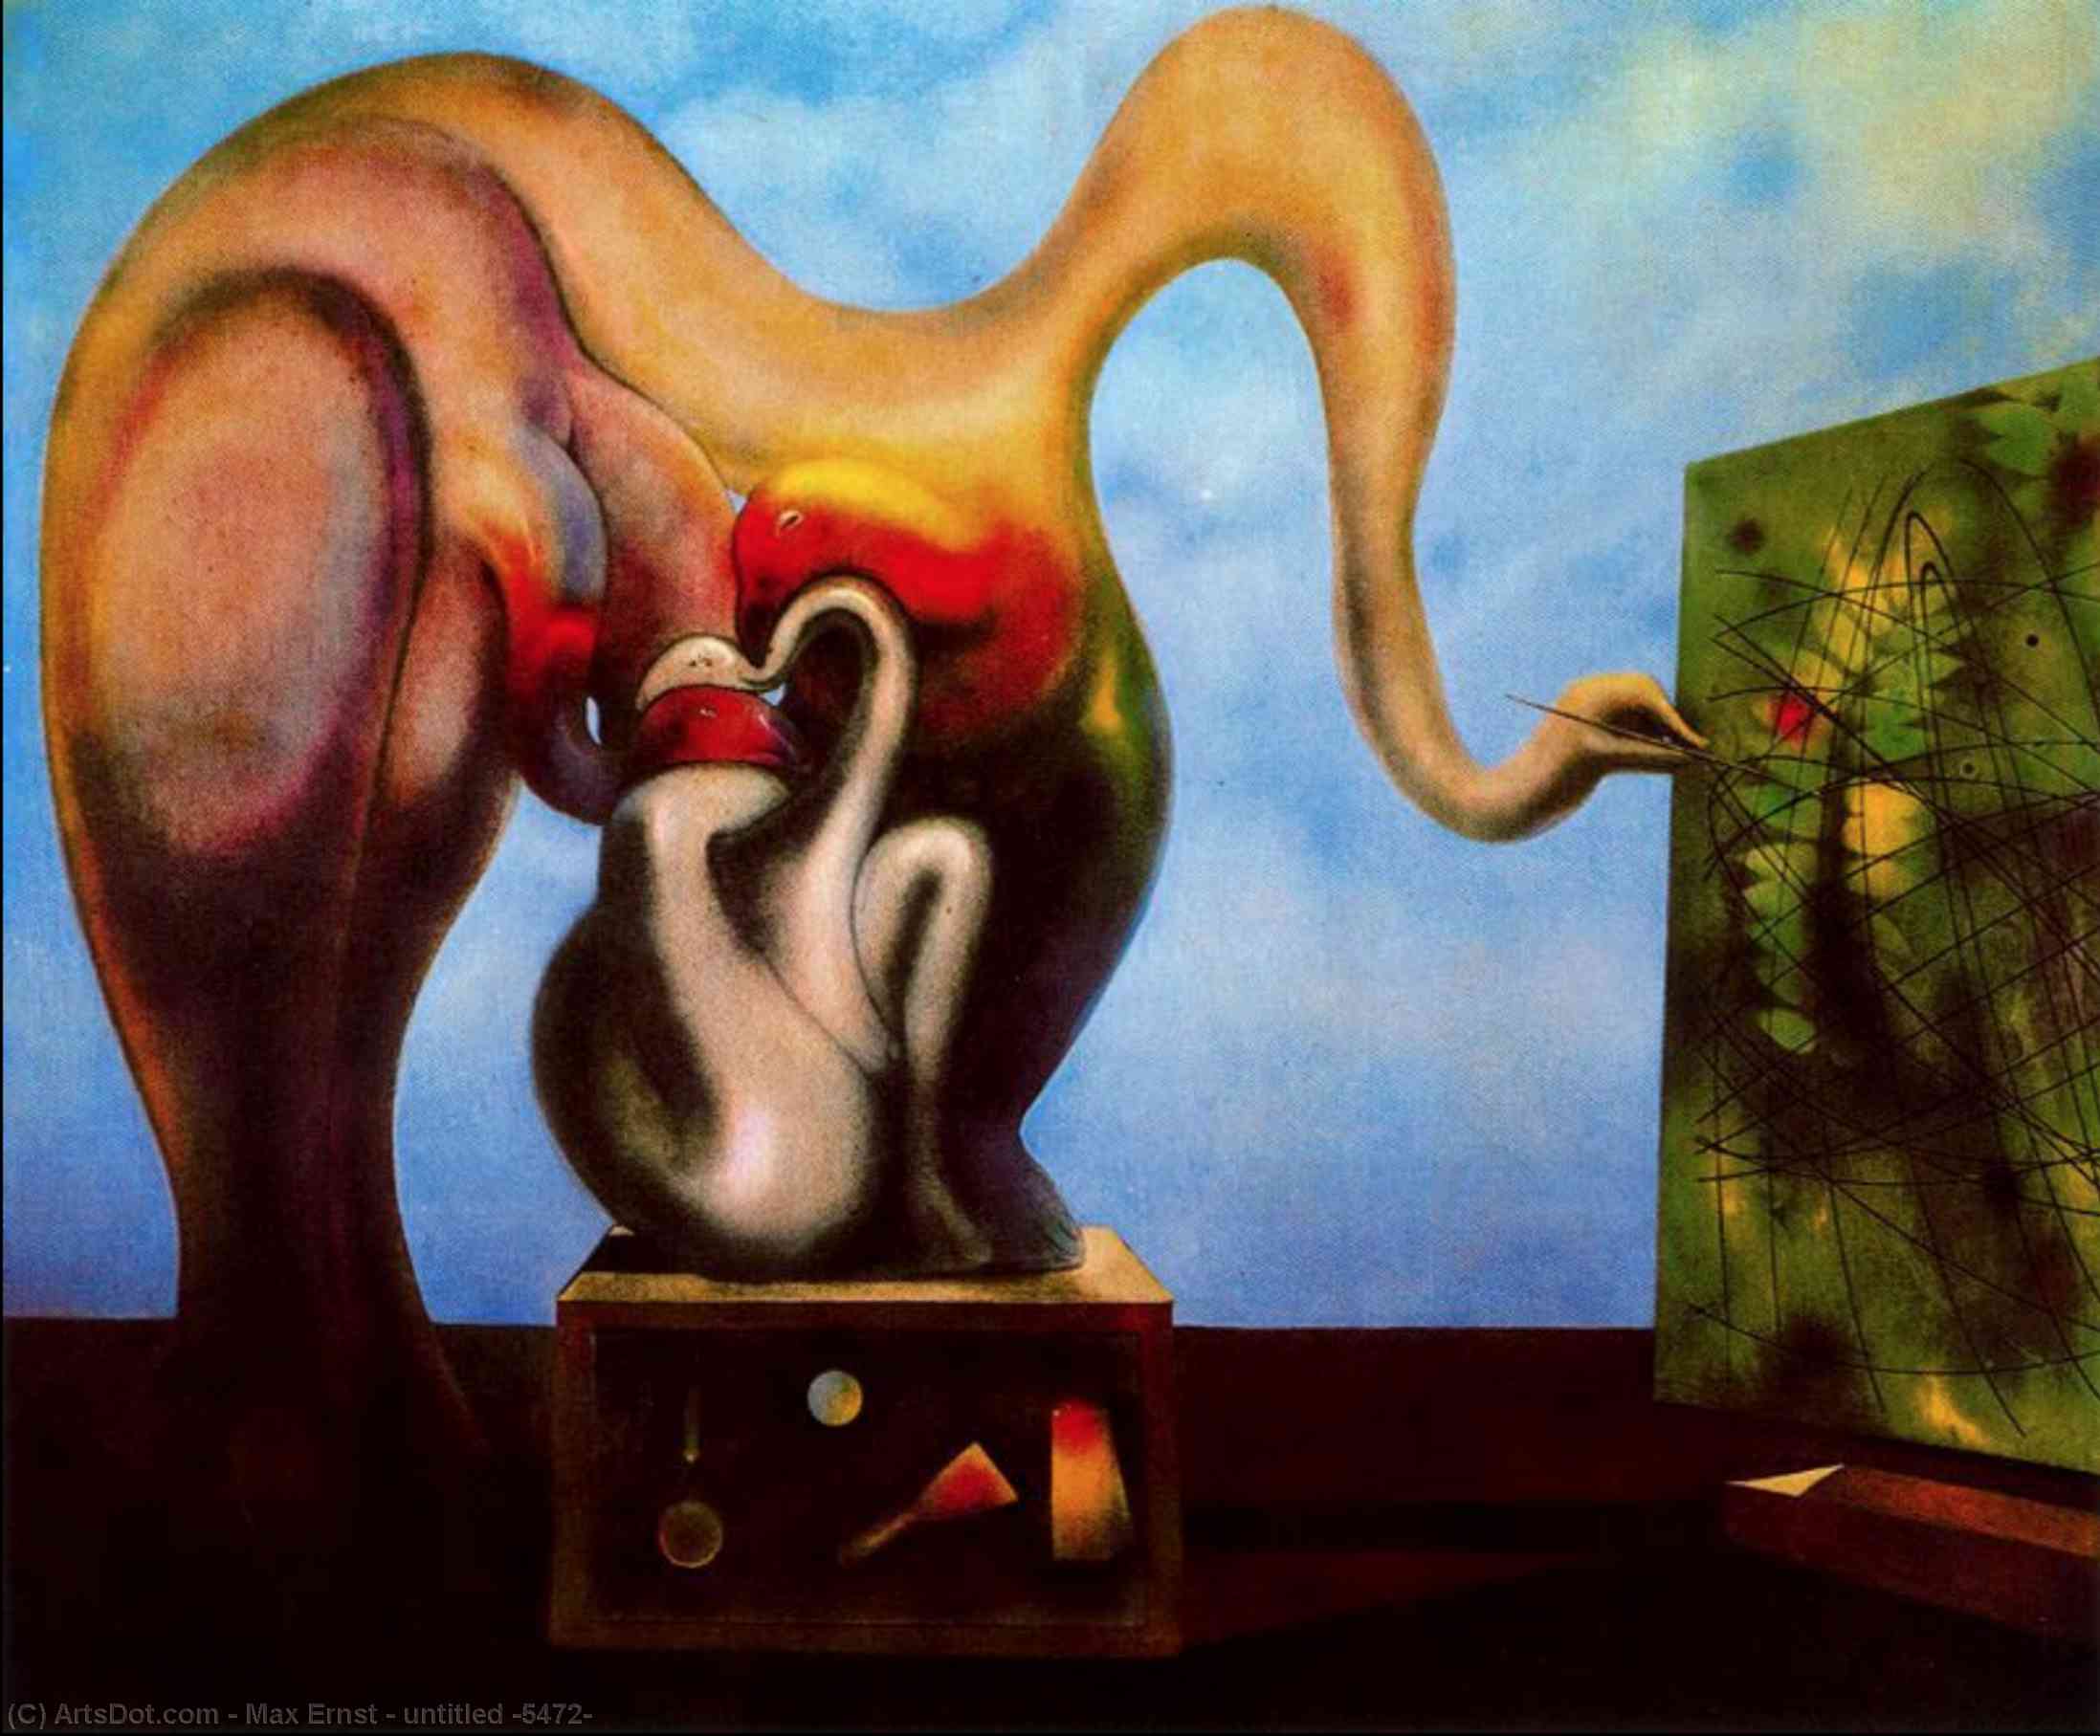 WikiOO.org - Енциклопедия за изящни изкуства - Живопис, Произведения на изкуството Max Ernst - untitled (5472)